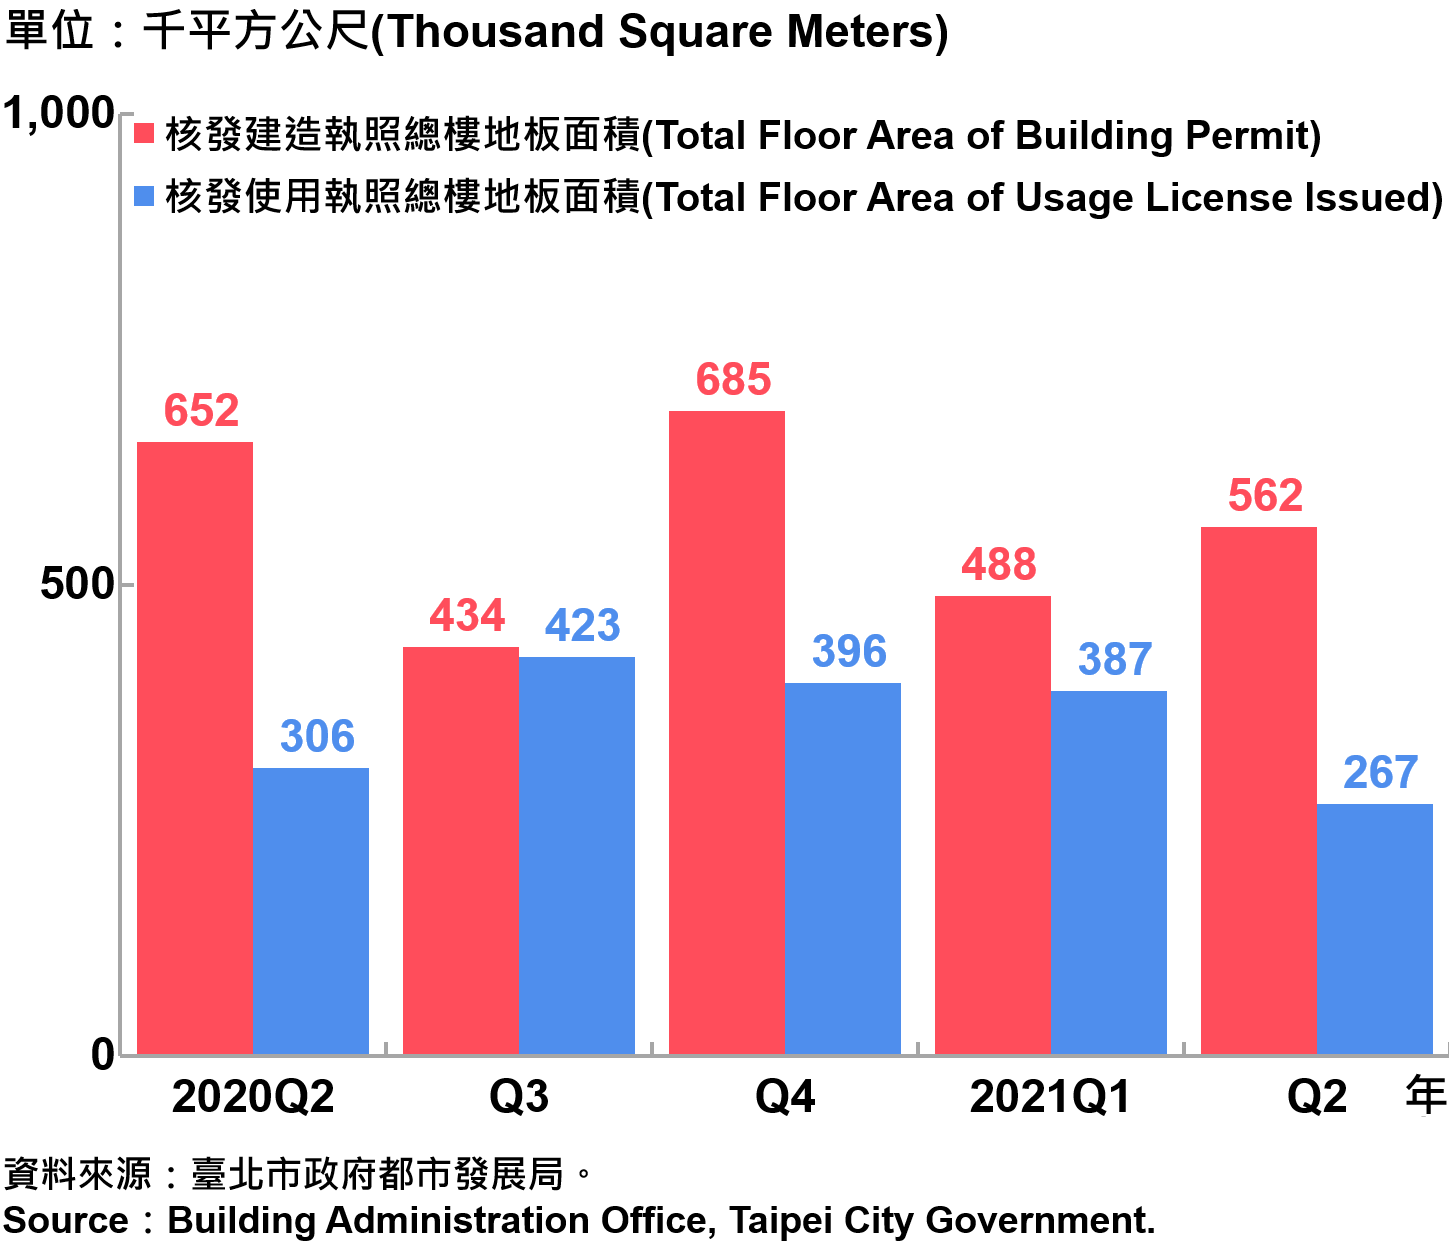 臺北市核發建築物執照與使用執照總樓地板面積—20210Q2 Building with Newly Construction and Using Construction Permits Issued in Taipei City—2021Q2